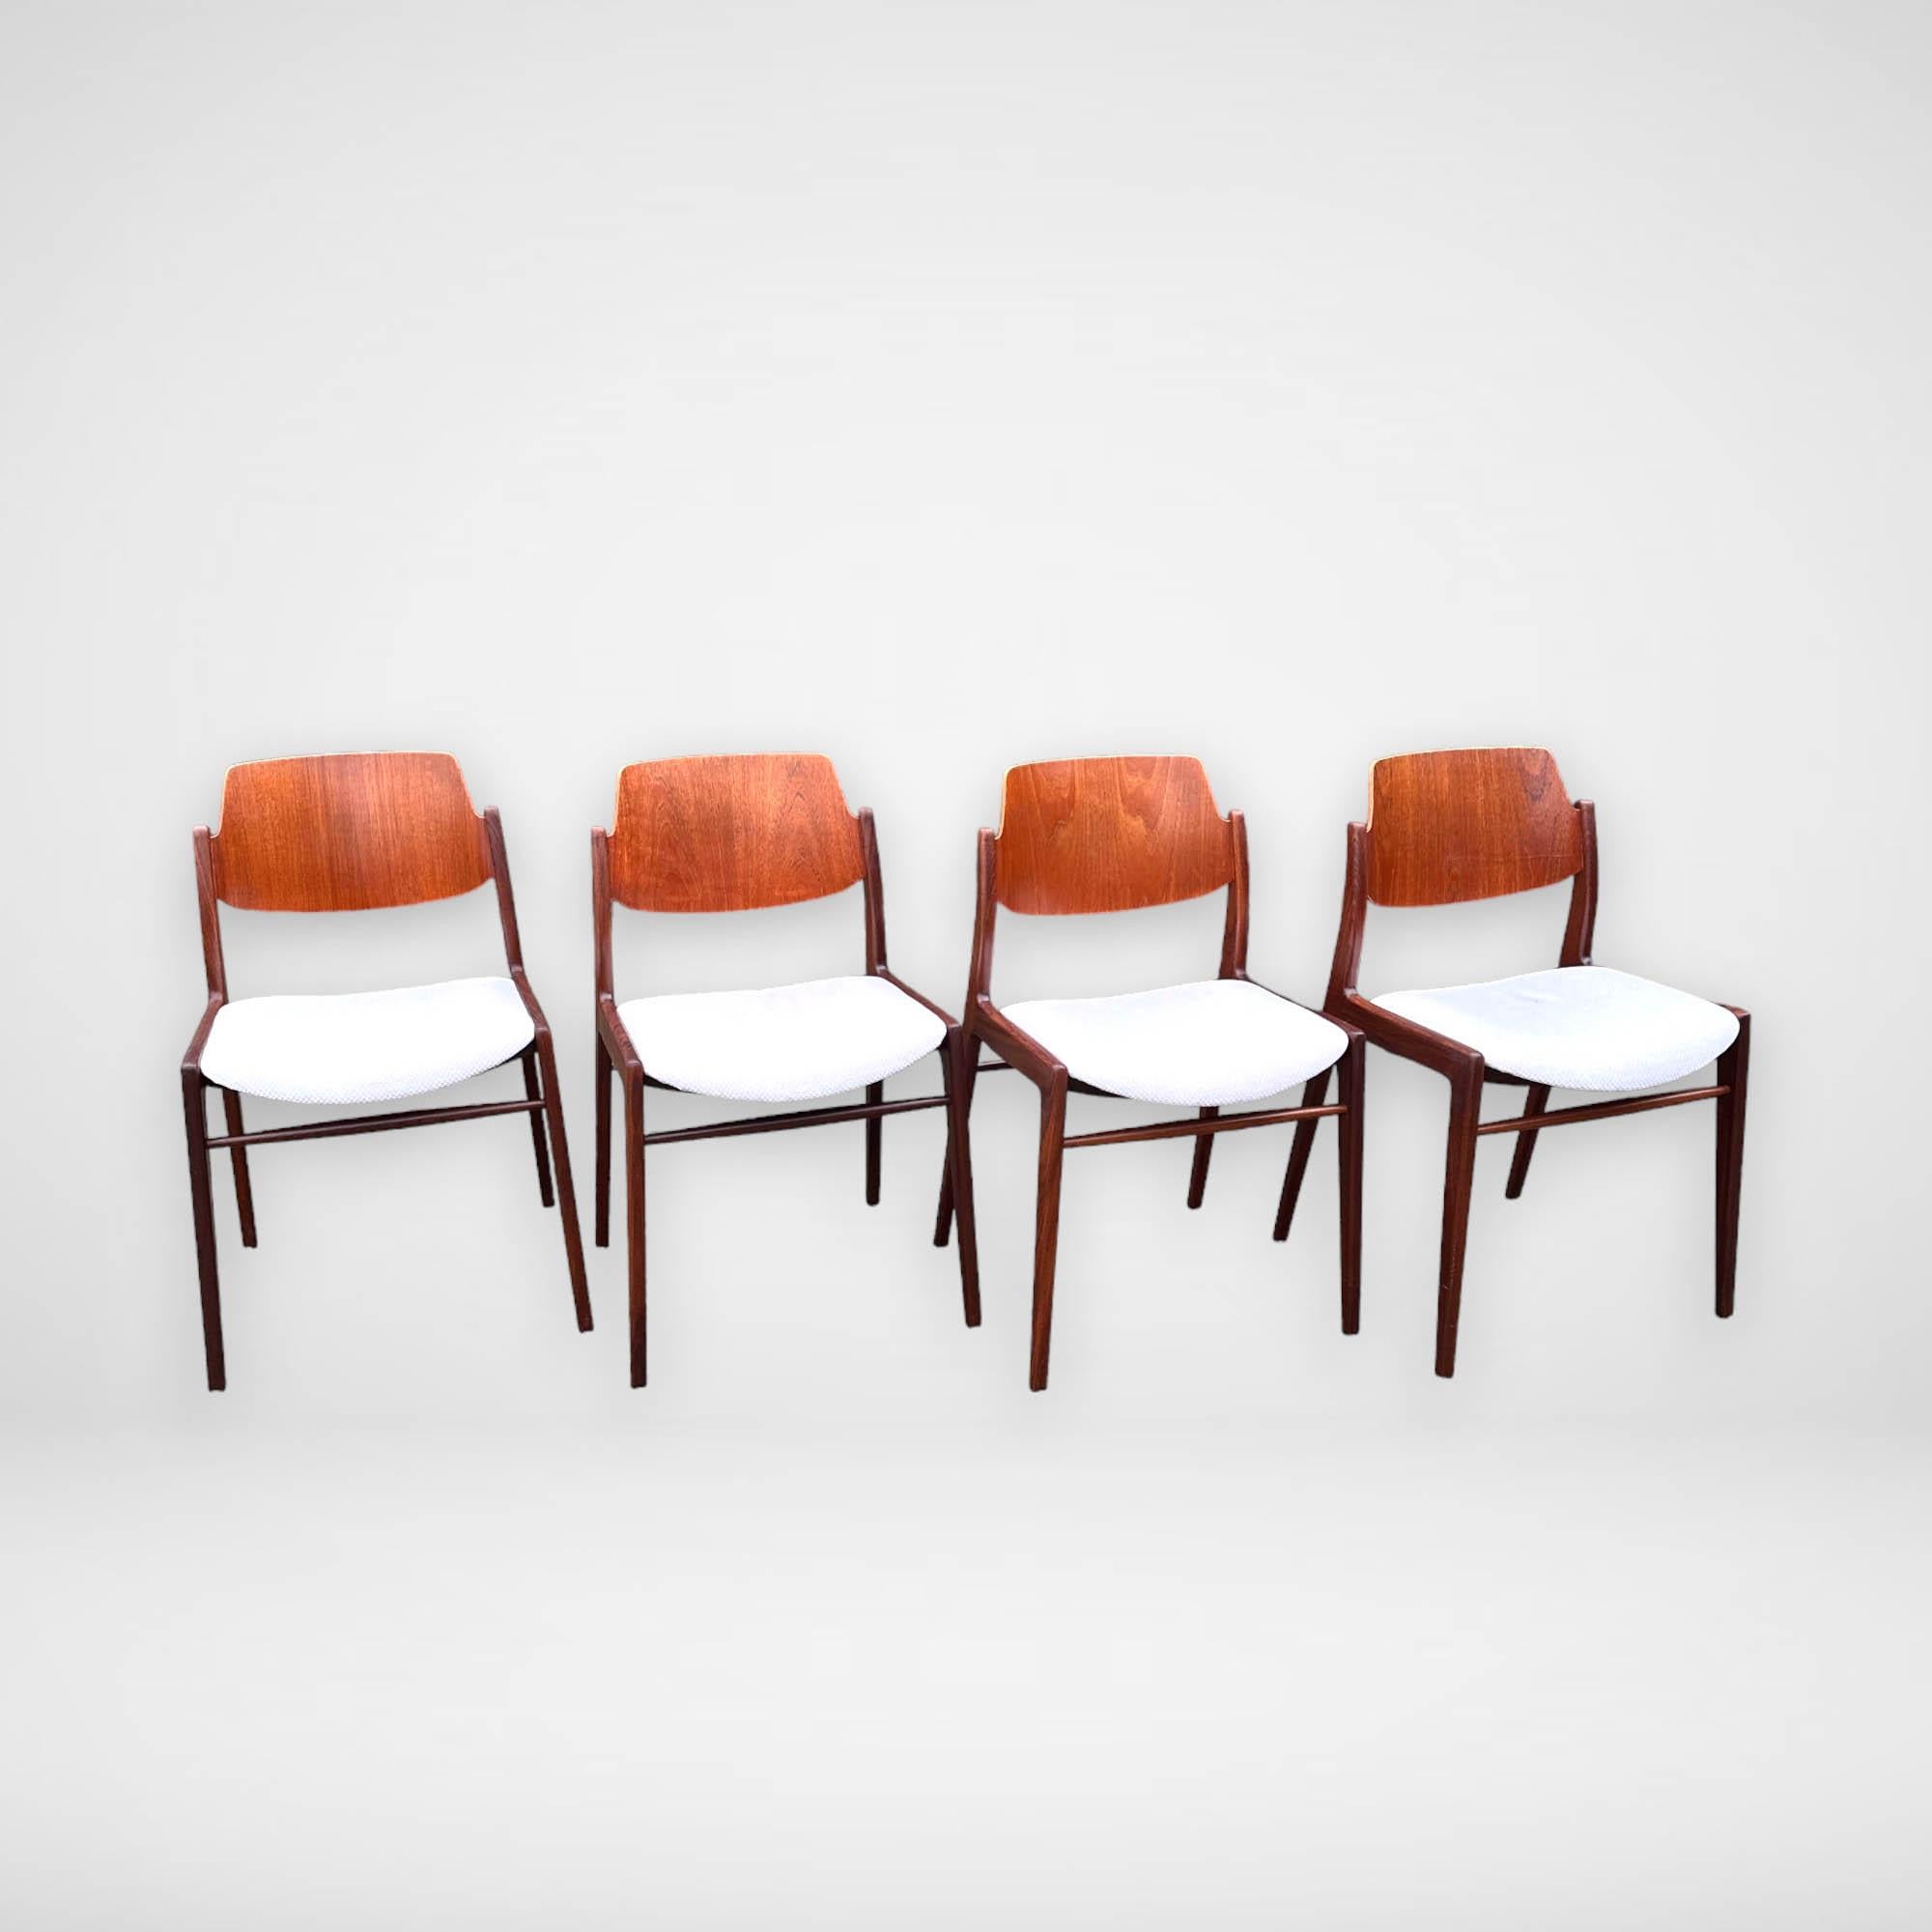 Ein Satz von 4 schönen Esszimmerstühlen, entworfen von Hartmut Lohmeyer für Wilkhahn. Die Rückenlehne ist aus Teak-Sperrholz gefertigt. Der massive Rahmen ist aus dunklerem Teakholz gefertigt. Diese Stühle 'Modell 476A' haben ein zeitloses Design,